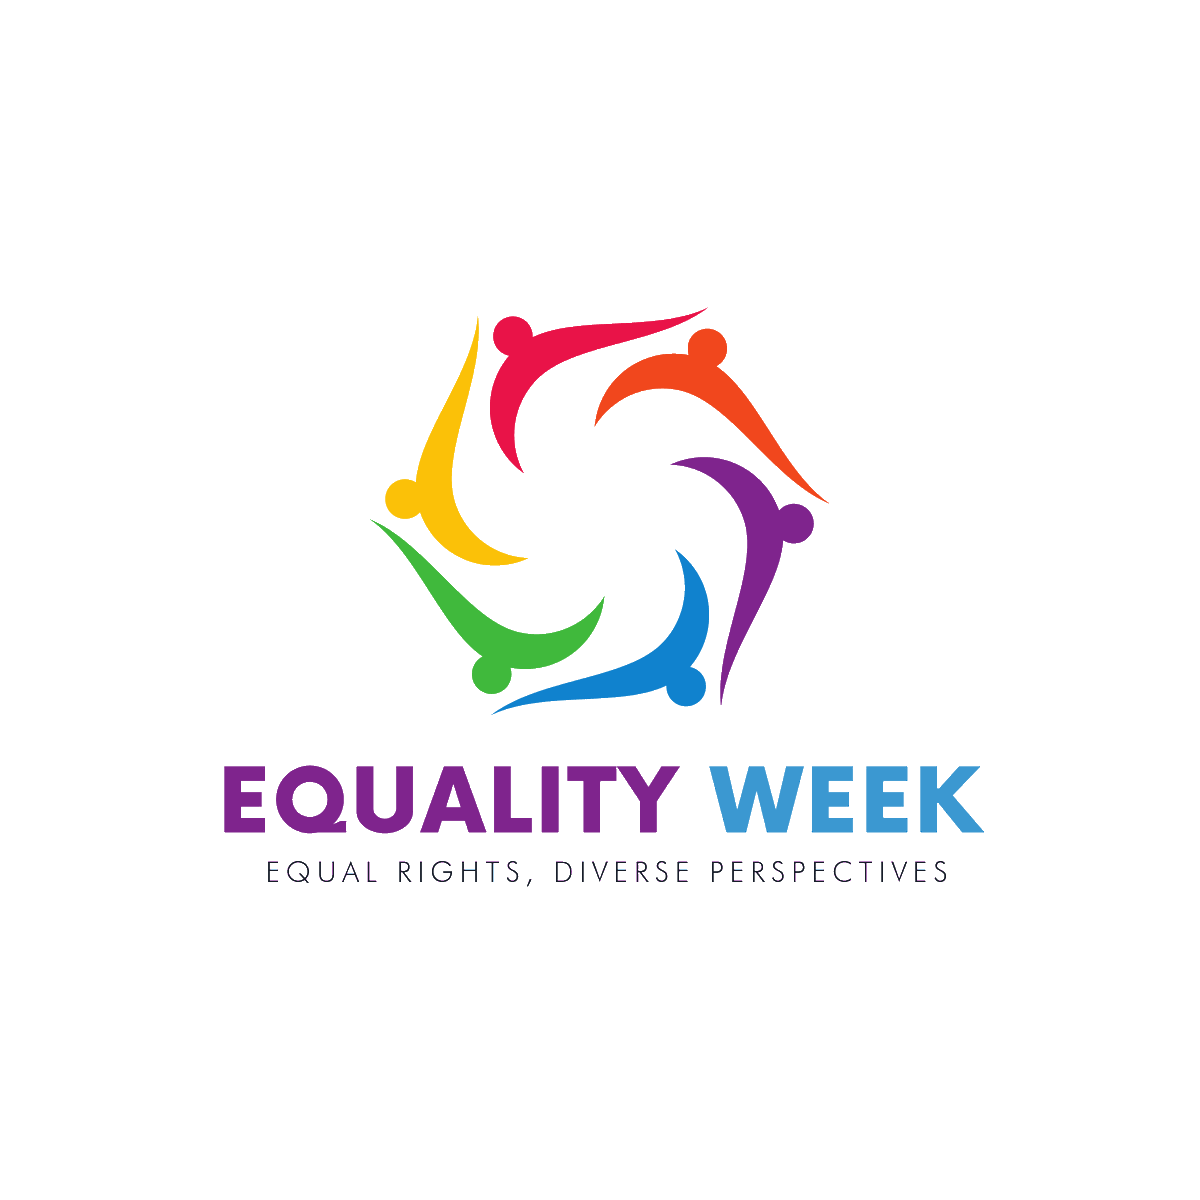 Iscrizioni aperte fino al 15 maggio per studenti/esse che vogliono partecipare all’Equality week di Unimore, 1 settimana dedicata alla promozione della diversità, con uno sguardo particolare alle diversità di genere, di orientamento sessuale, basate sulla disabilità e sull’etnia.